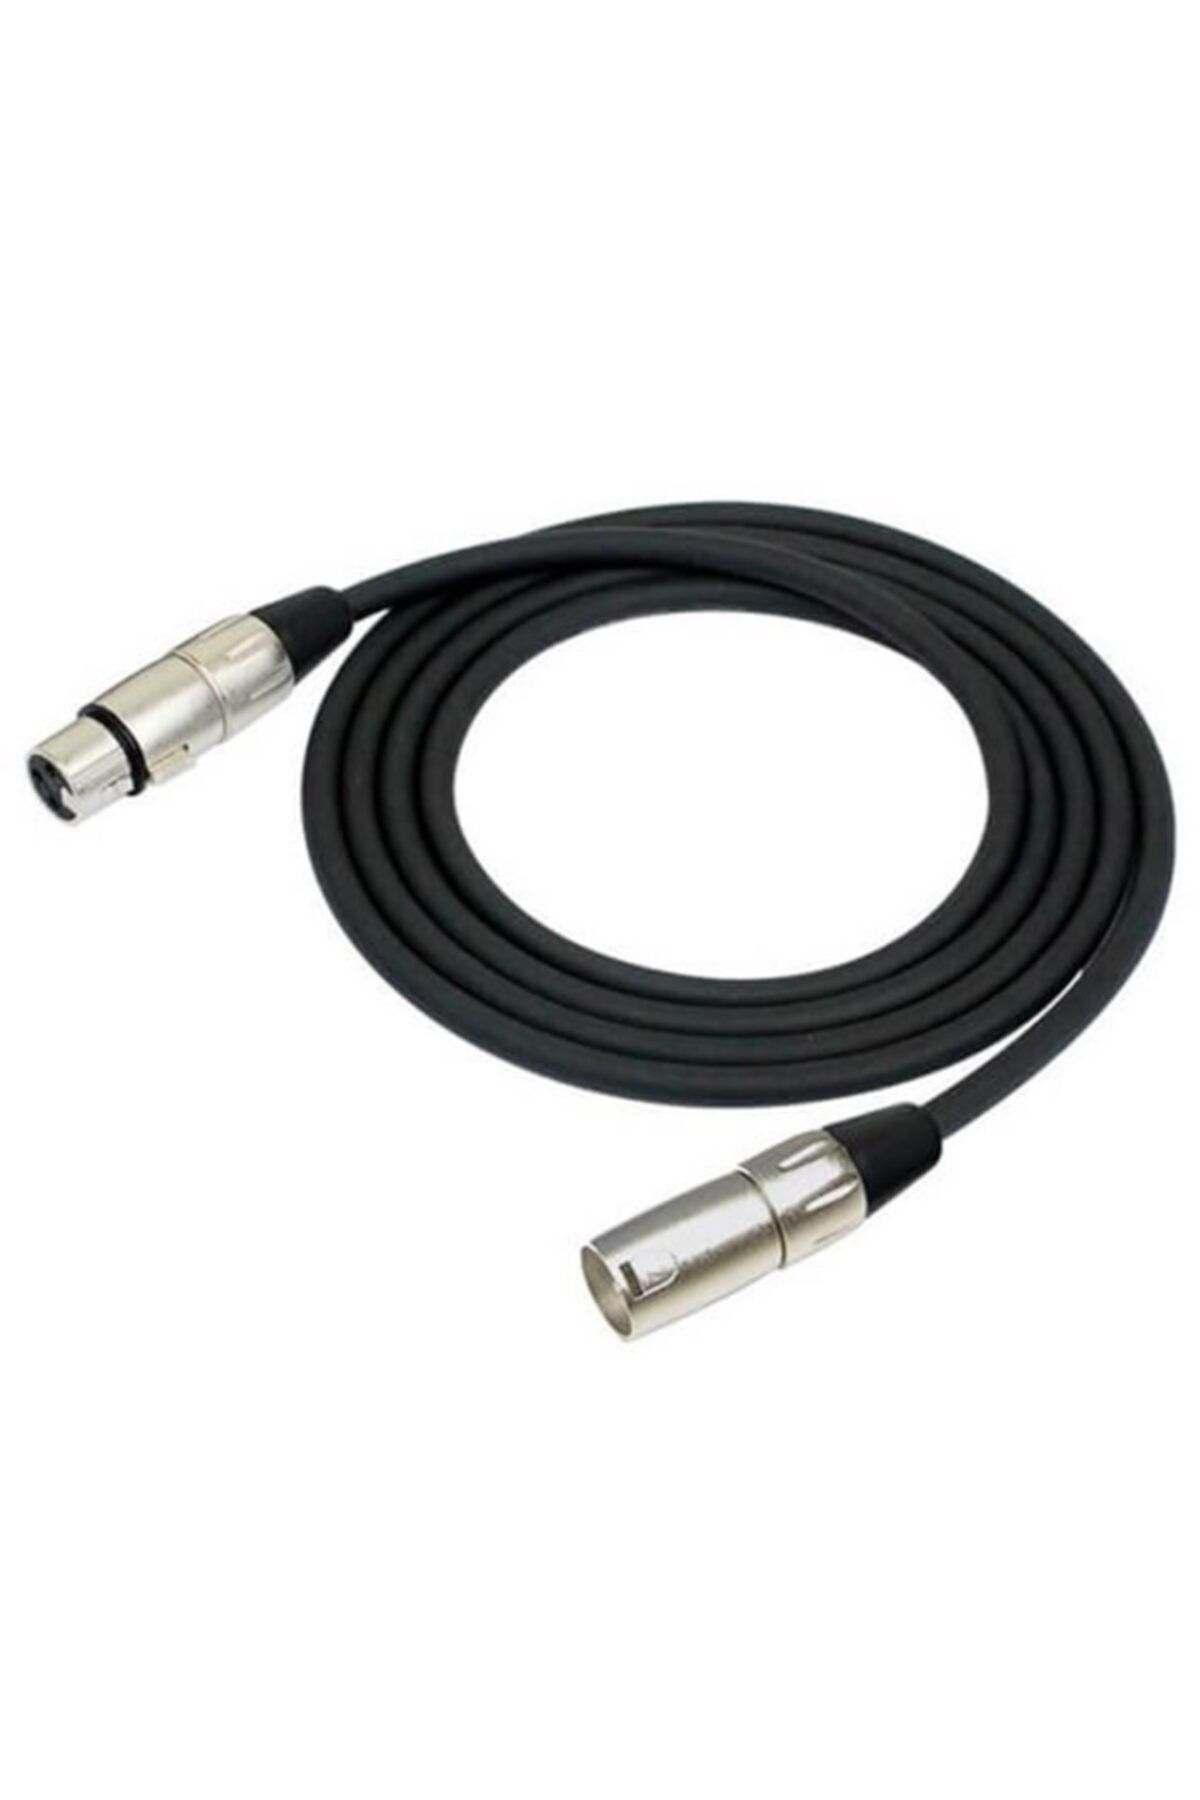 Lastvoice Mc-2110 Stereo Mikrofon Sinyal Kablosu XLR + XLR 10 Metre